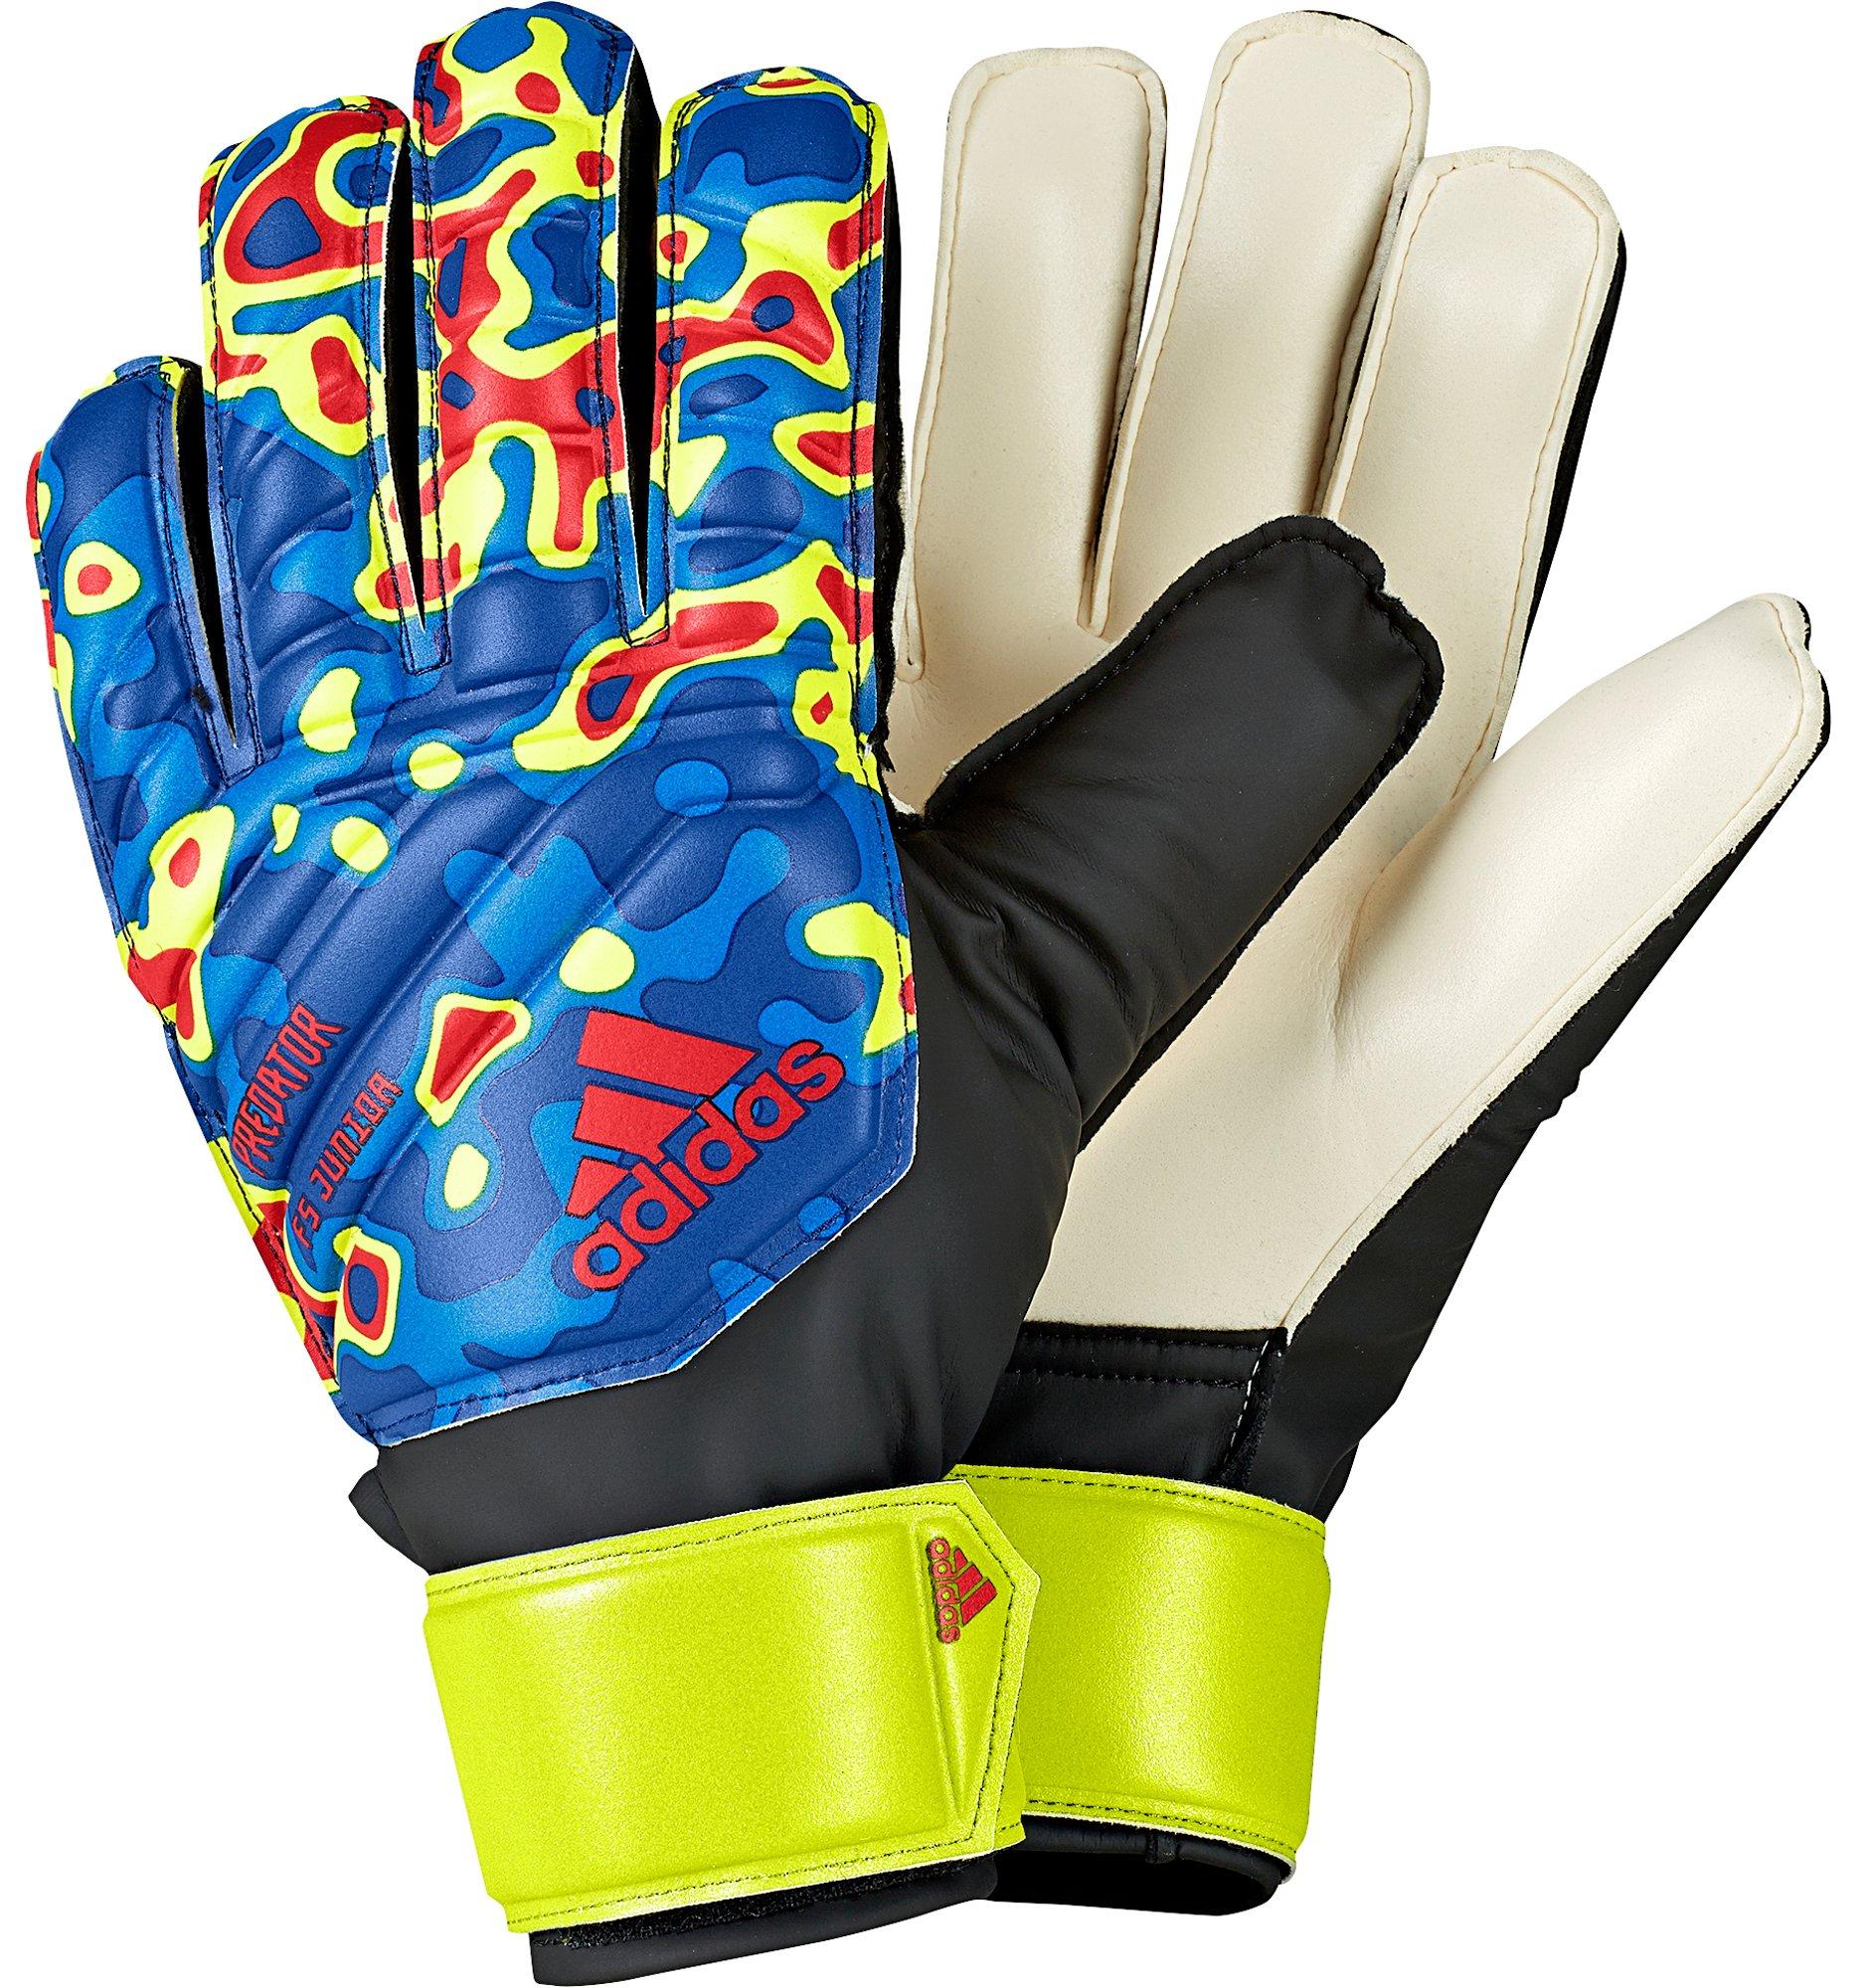 adidas soccer gloves